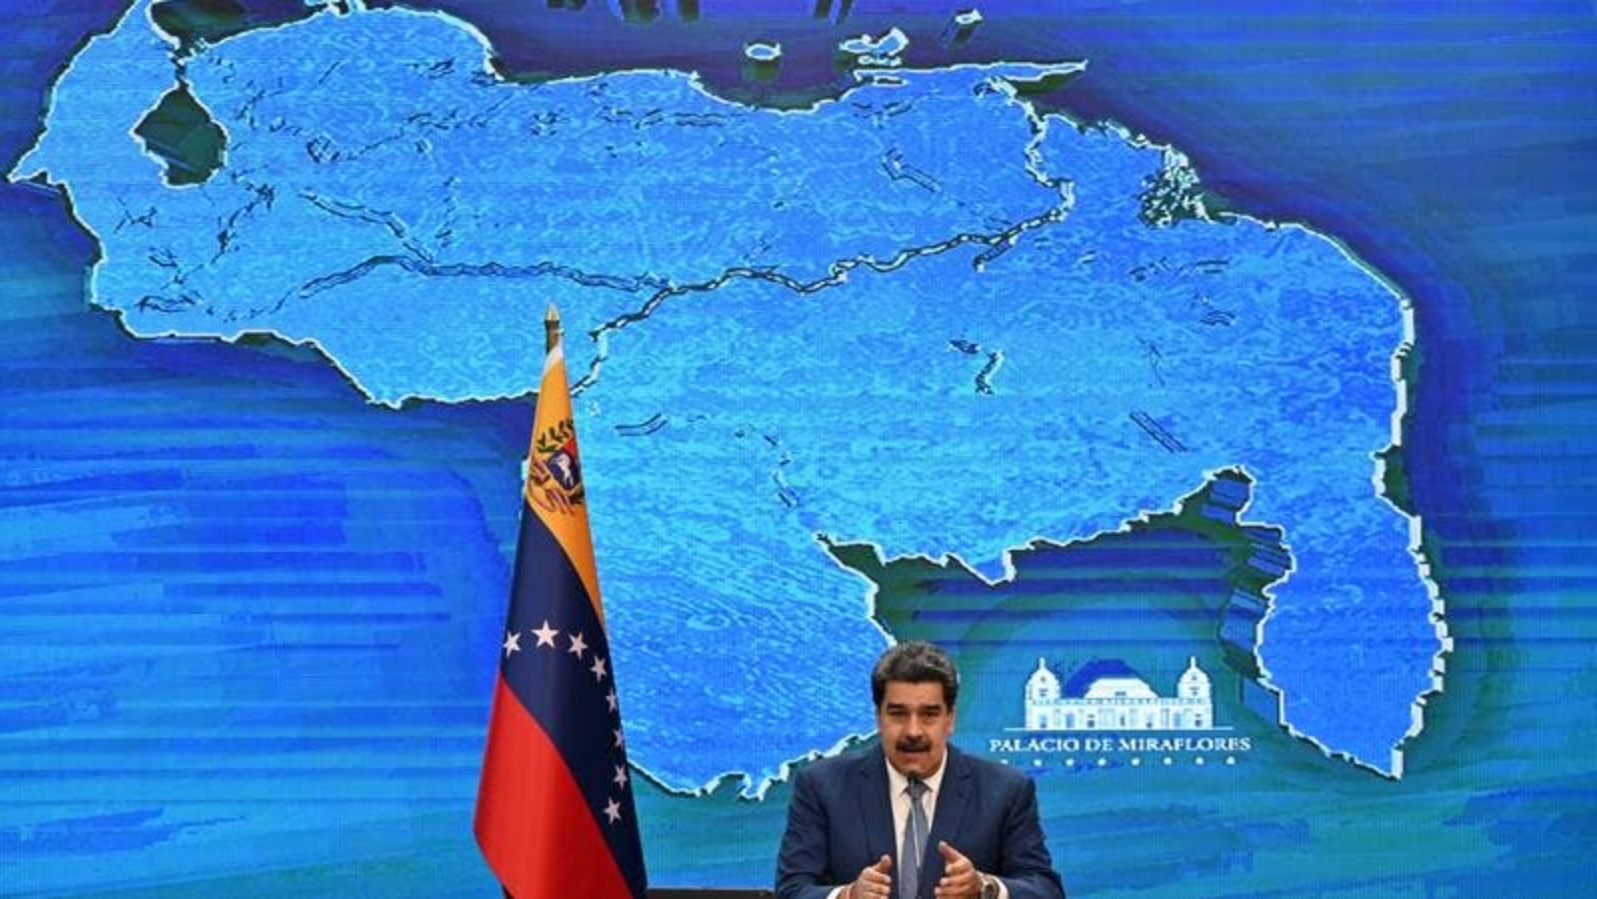 الرئيس الفنزويلي نيكولاس مادورو يتحدث خلال مؤتمر صحفي مع مراسلي وسائل الإعلام الدولية في قصر ميرافلوريس الرئاسي في كاراكاس. بتاريخ 15 آب/أغسطس 2021.